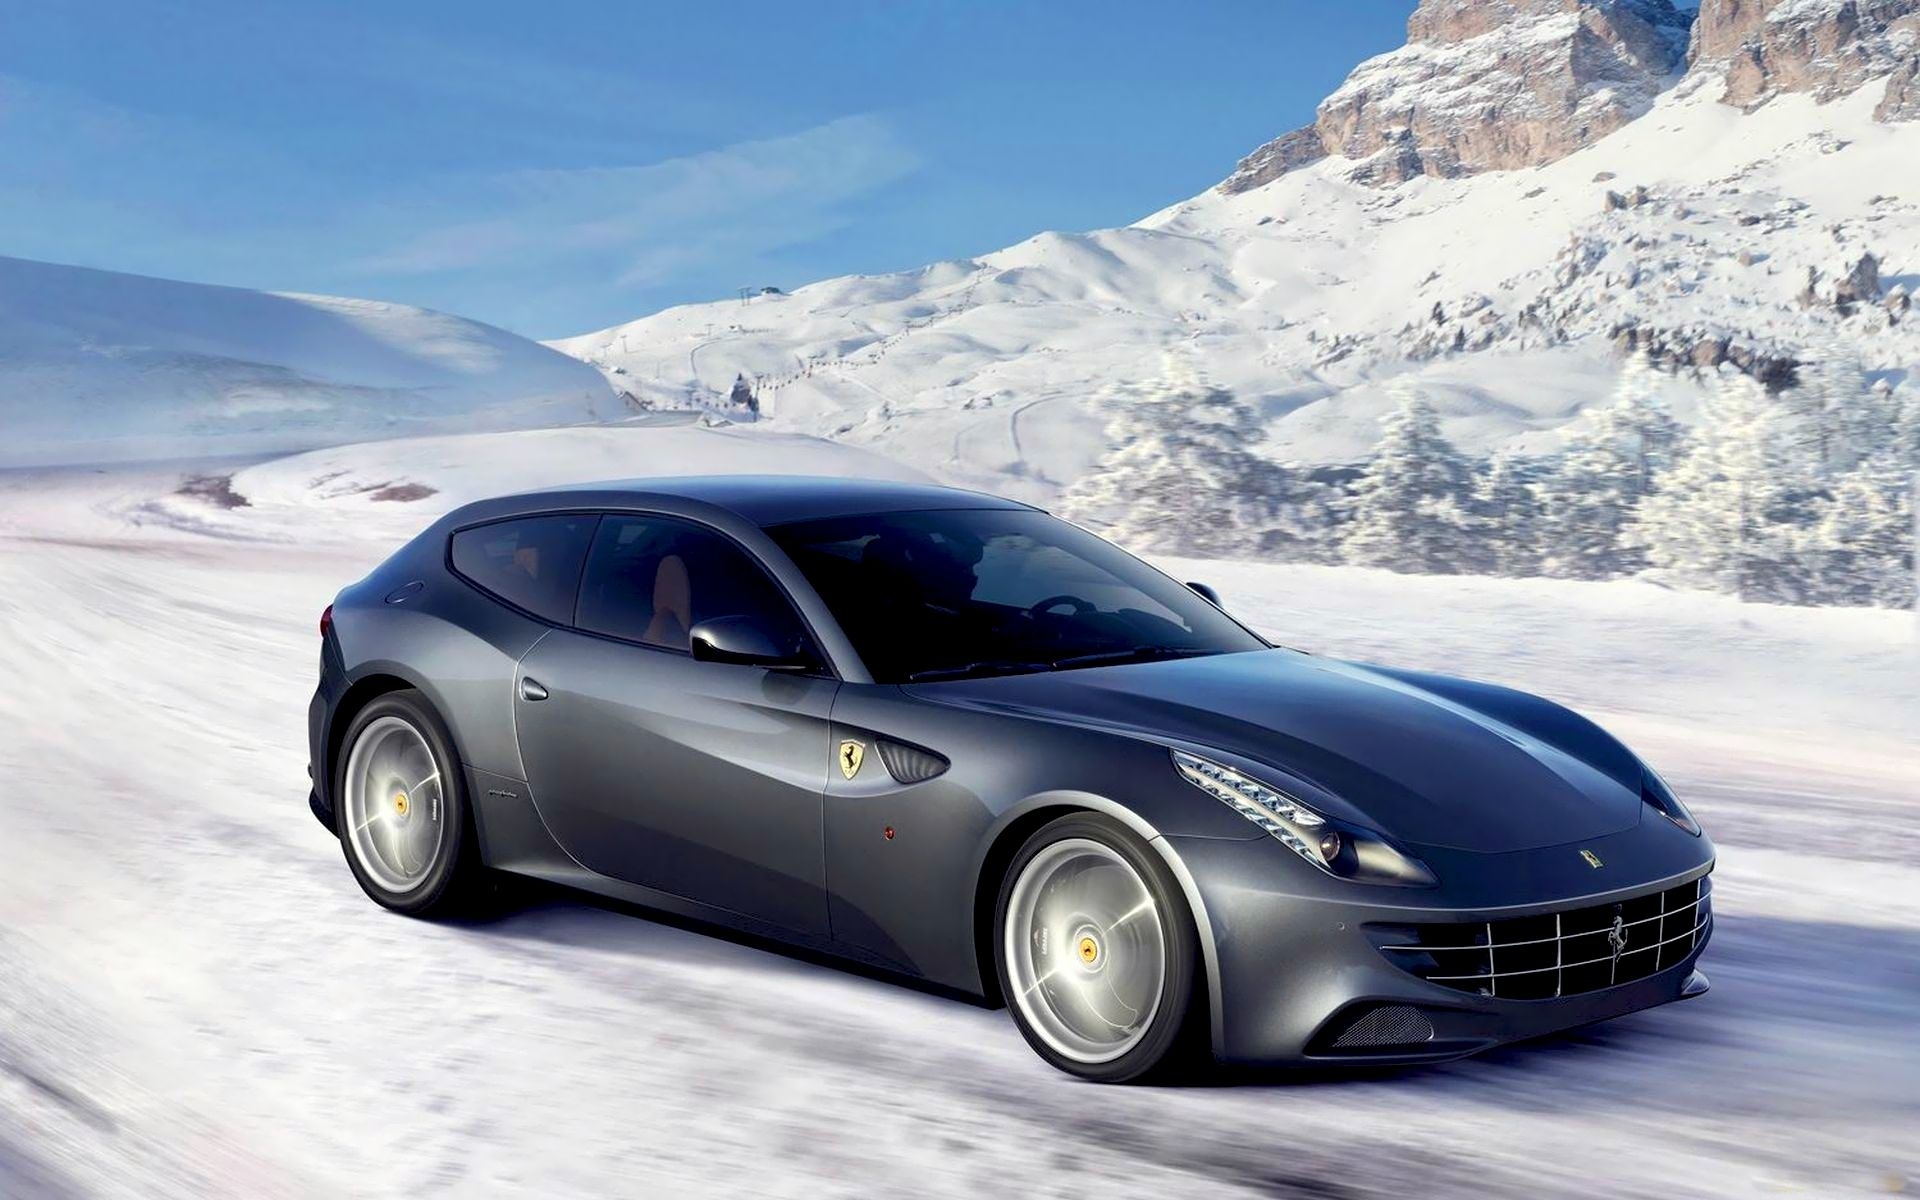 Скачать картинку Снег, Горы, Зима, Пейзаж, Транспорт, Машины, Феррари (Ferrari) в телефон бесплатно.